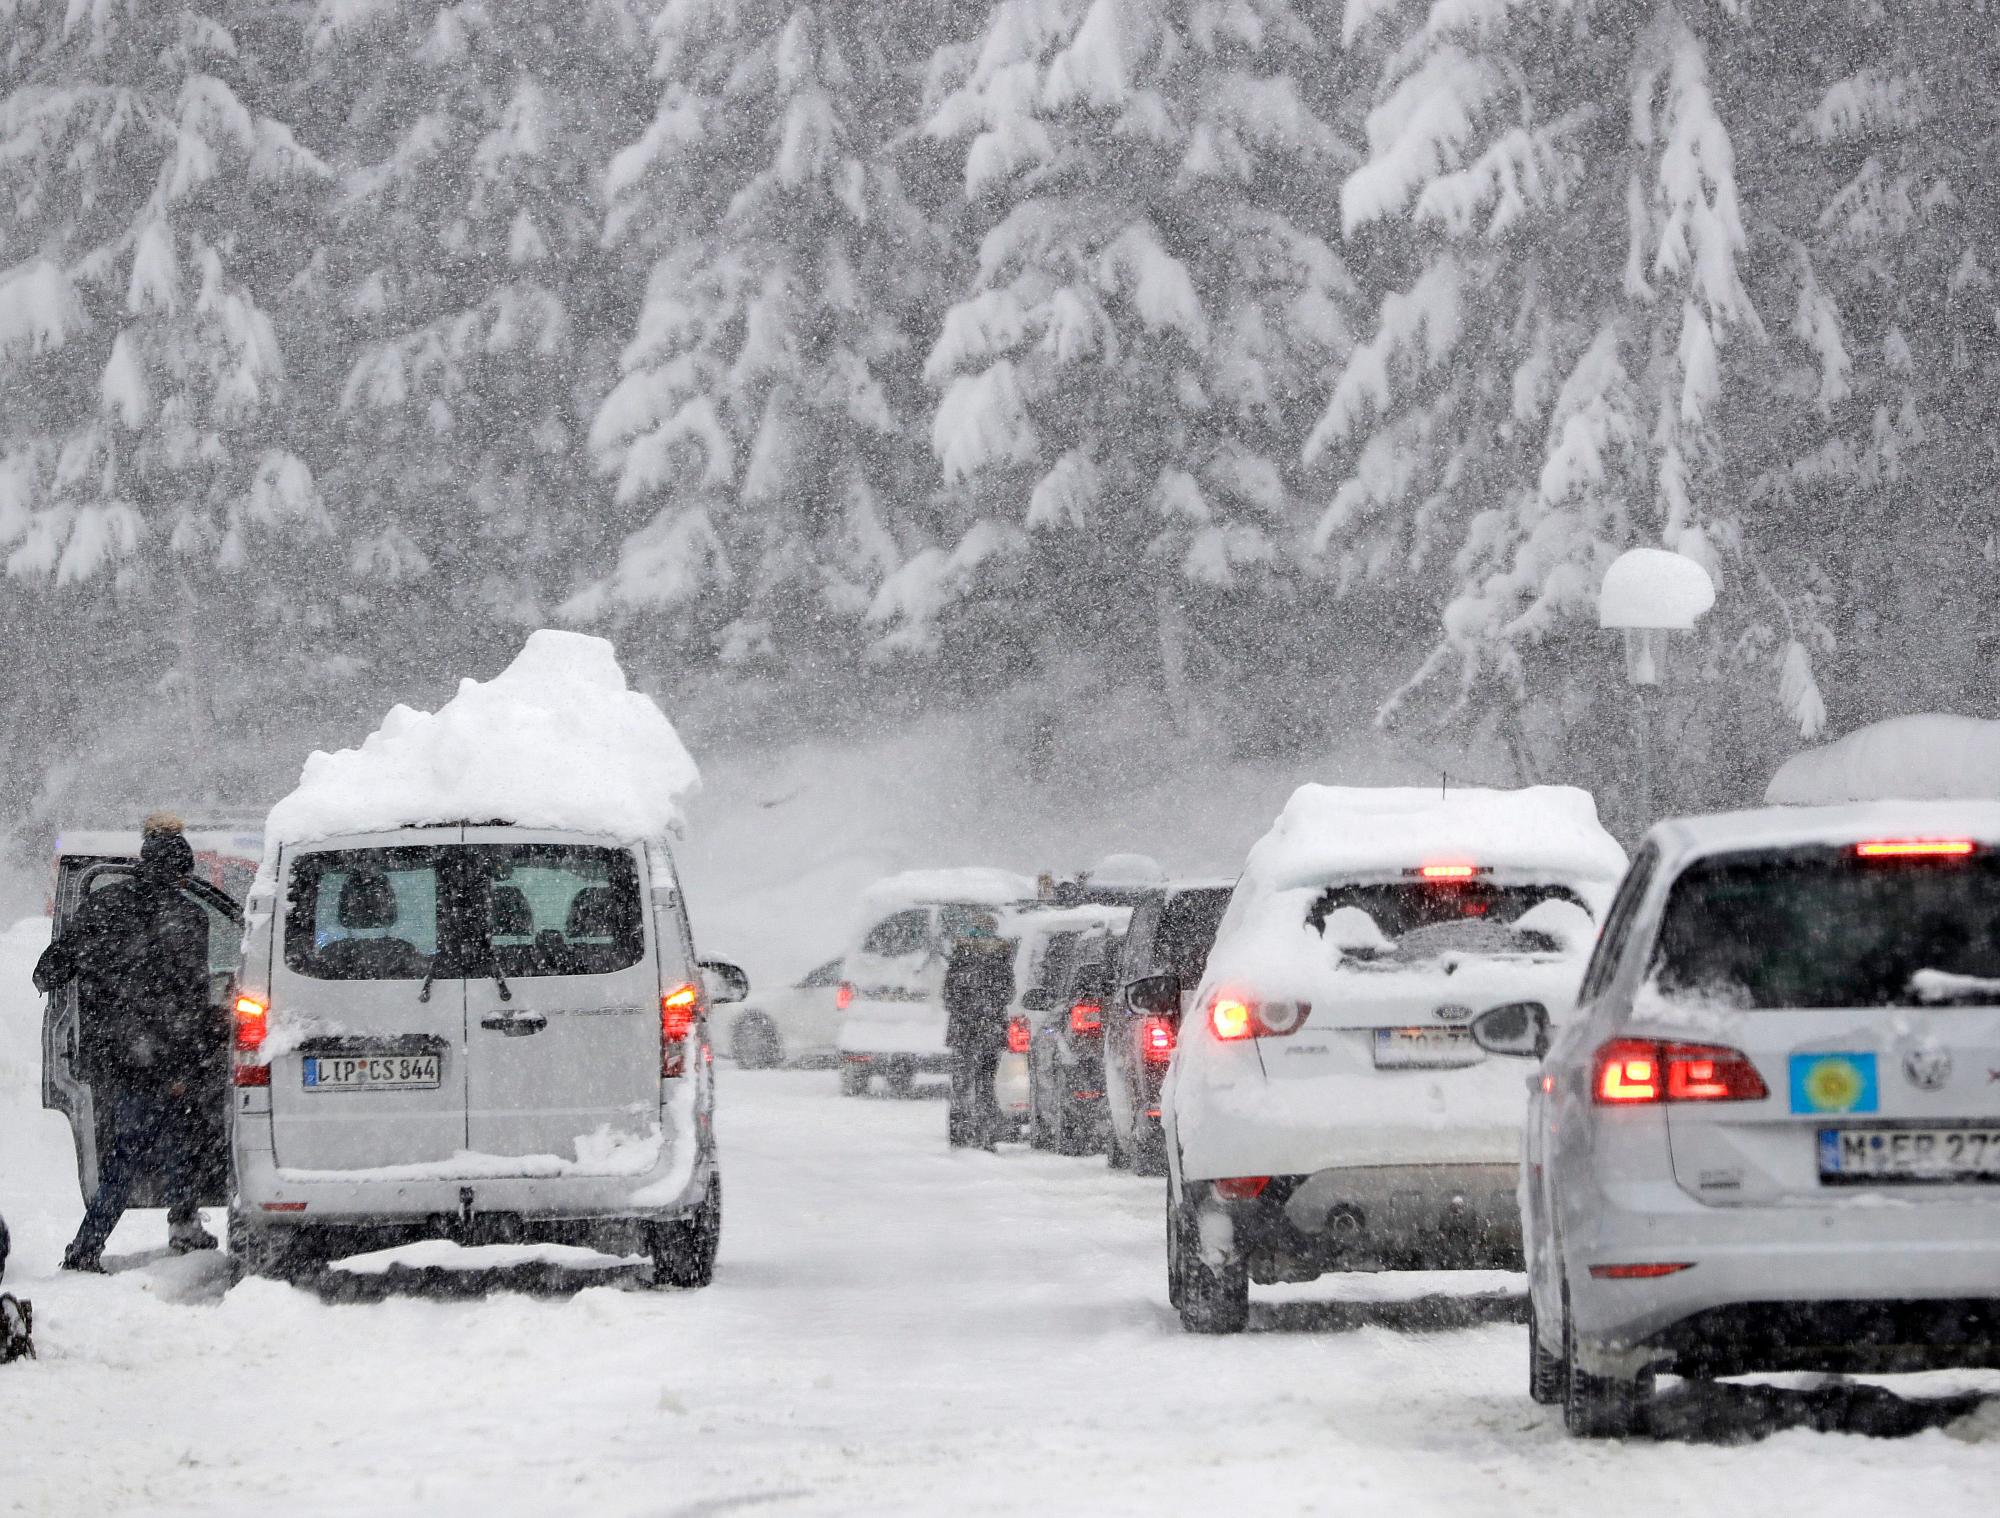 Los automóviles turísticos hacen cola en la carretera principal que sale de un valle que fue bloqueado luego de la nevada en Filzmoos, Austria, sábado 5 de enero de 2019.